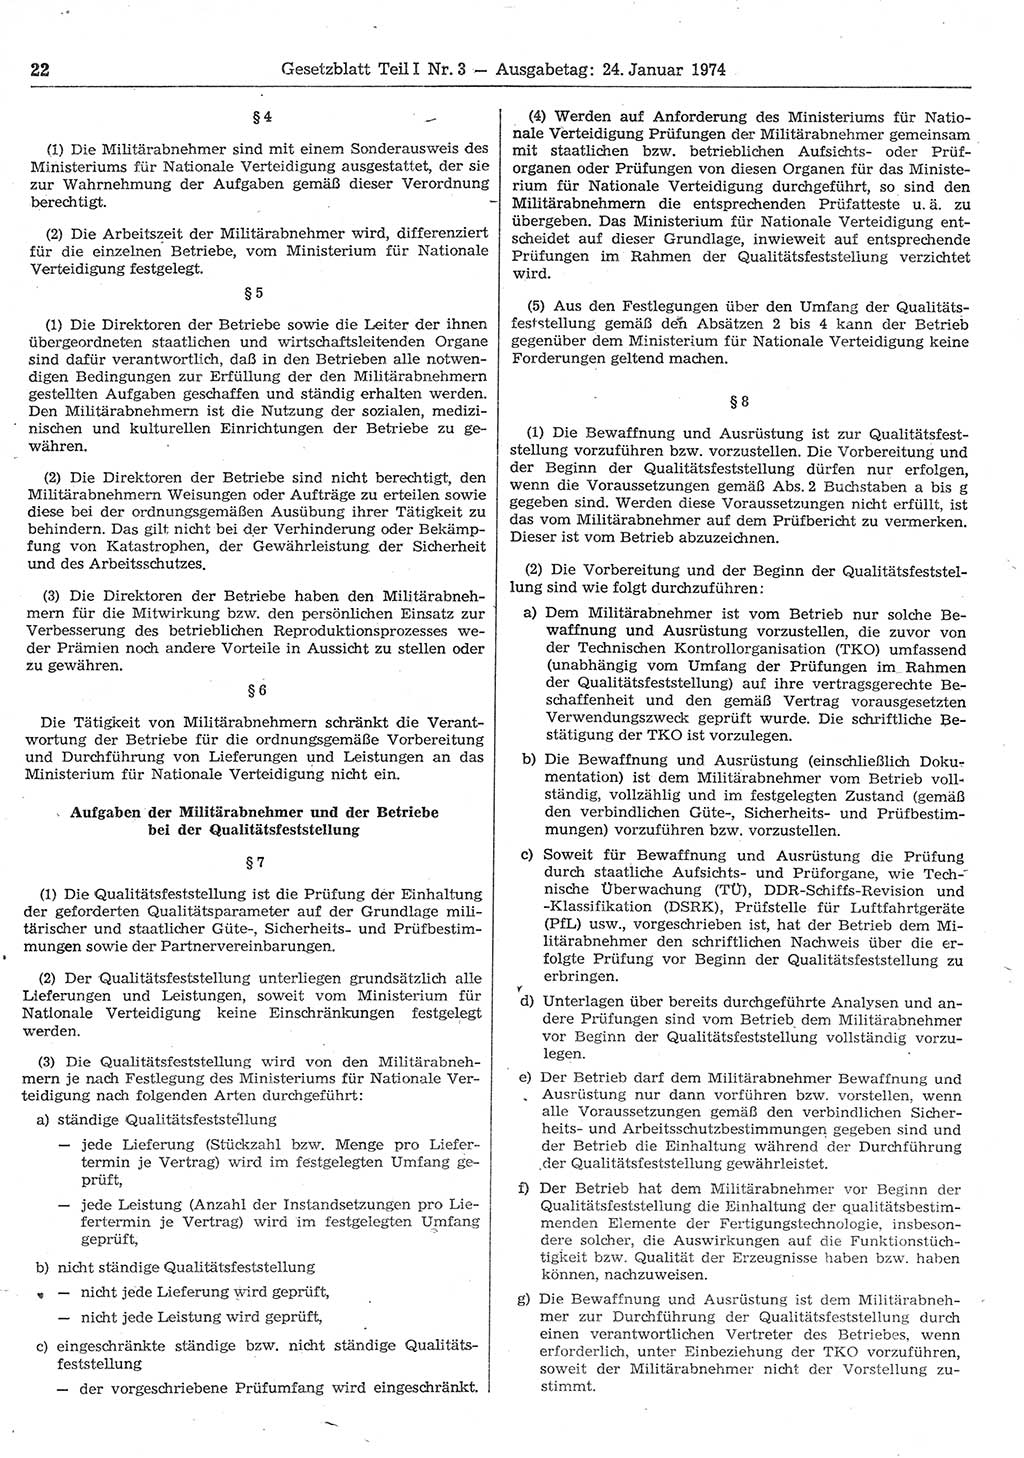 Gesetzblatt (GBl.) der Deutschen Demokratischen Republik (DDR) Teil Ⅰ 1974, Seite 22 (GBl. DDR Ⅰ 1974, S. 22)